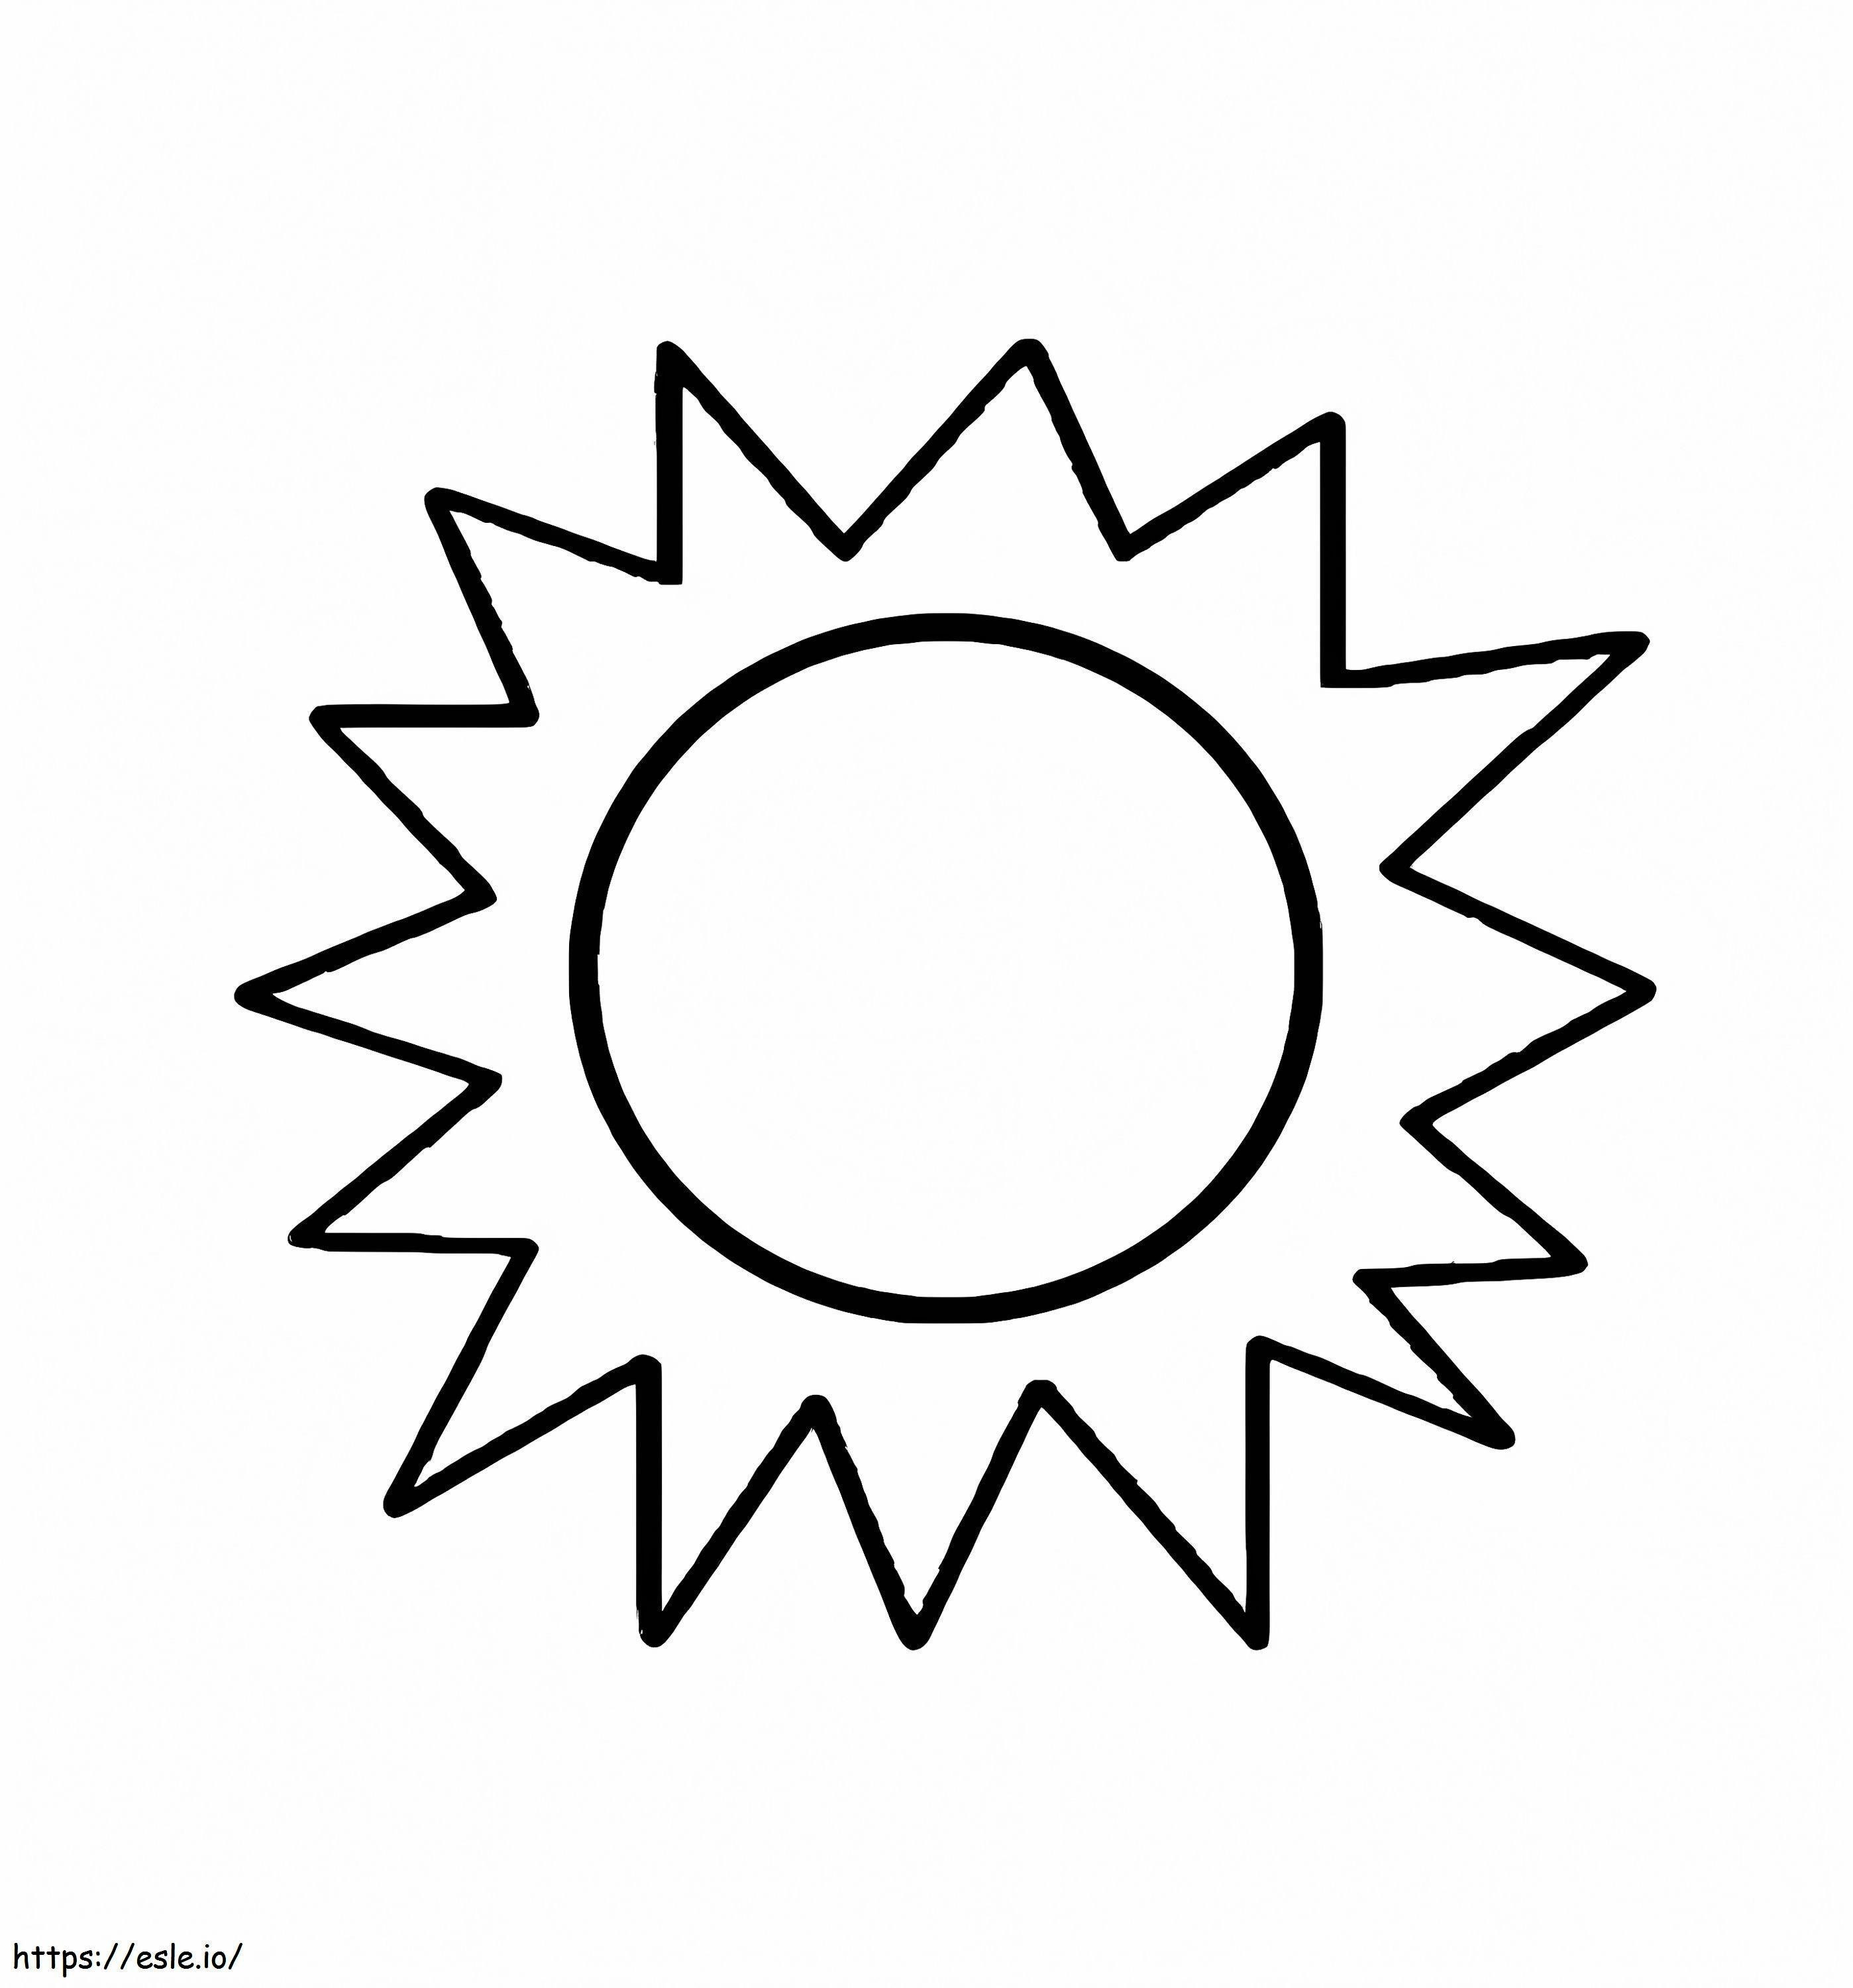 Coloriage Soleil gratuit à imprimer dessin